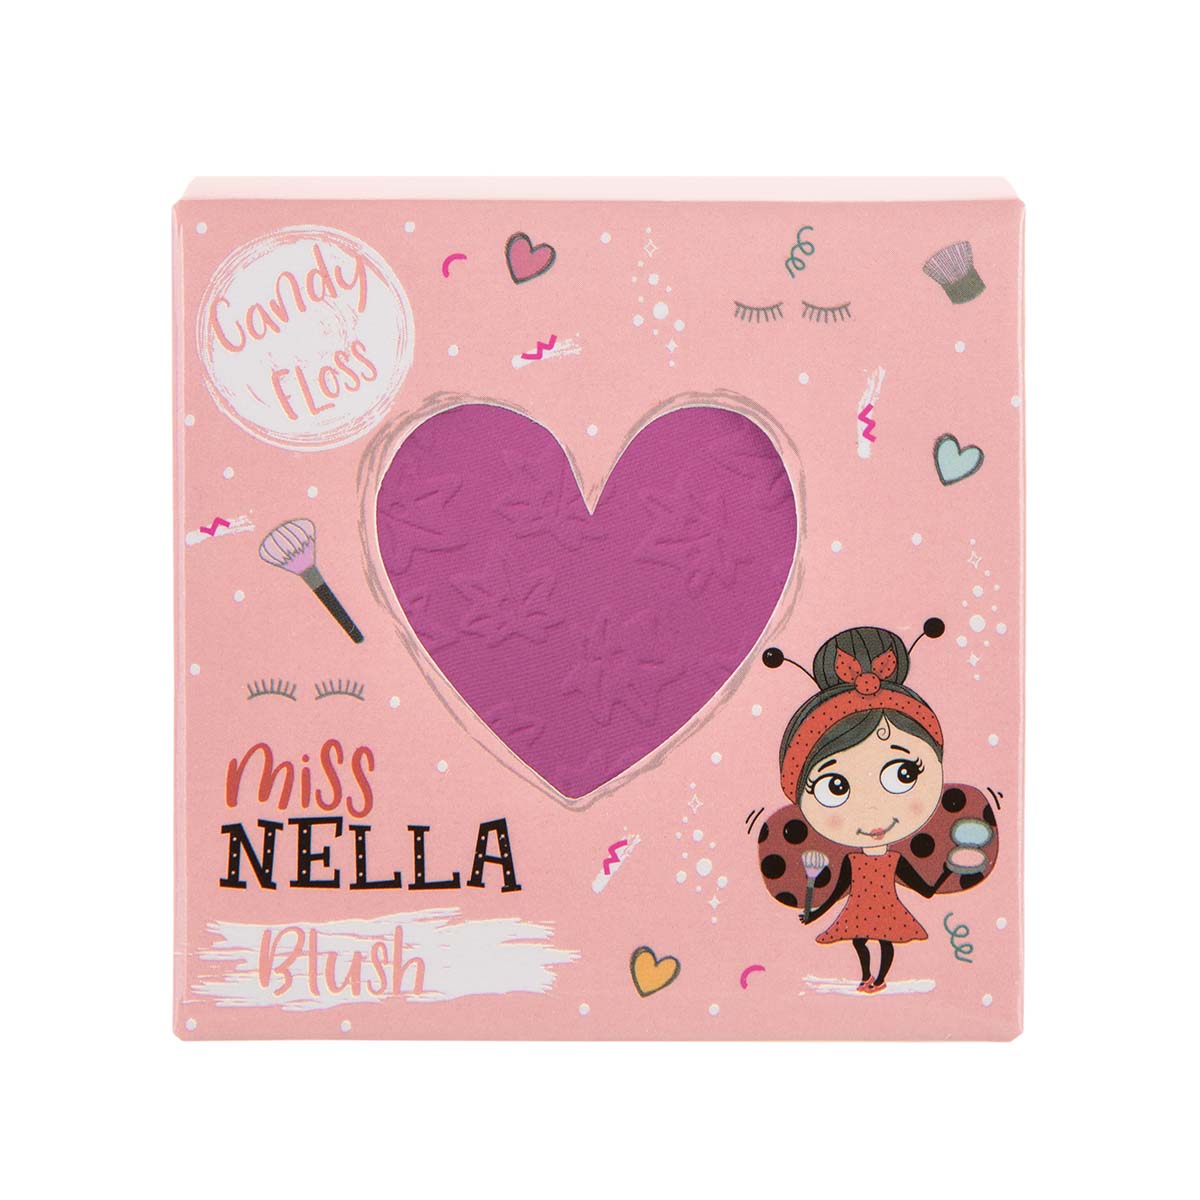 Mooie roze wangetjes maak je met de Blush Candy Floss van Miss Nella! Voor alle kinderen die het leuk vinden om zichzelf of anderen op te maken. Deze make-up is vrij van chemicaliën en zacht voor de huid. VanZus